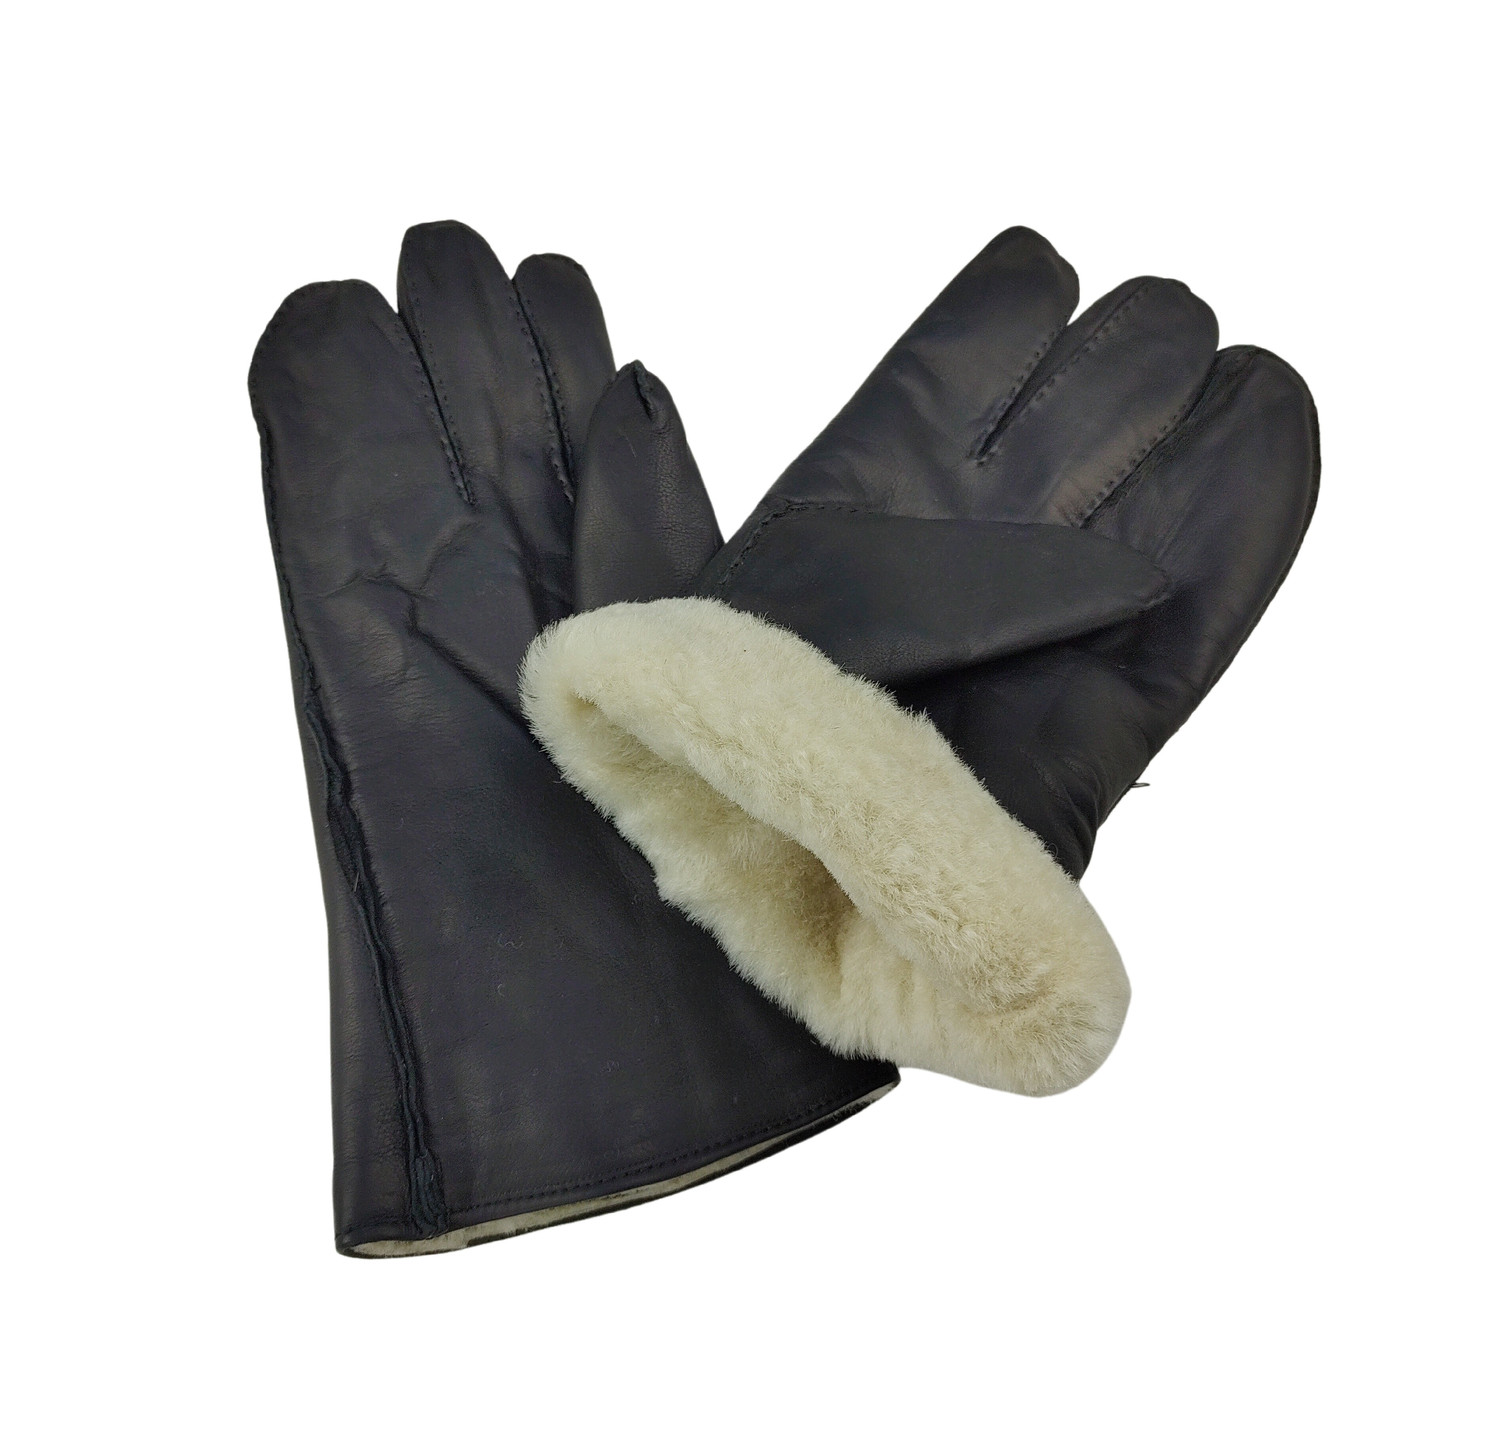 Rukavice kožené čtyřprsté zimní s kožešinou černé Velikost: 3. (25-28cm)